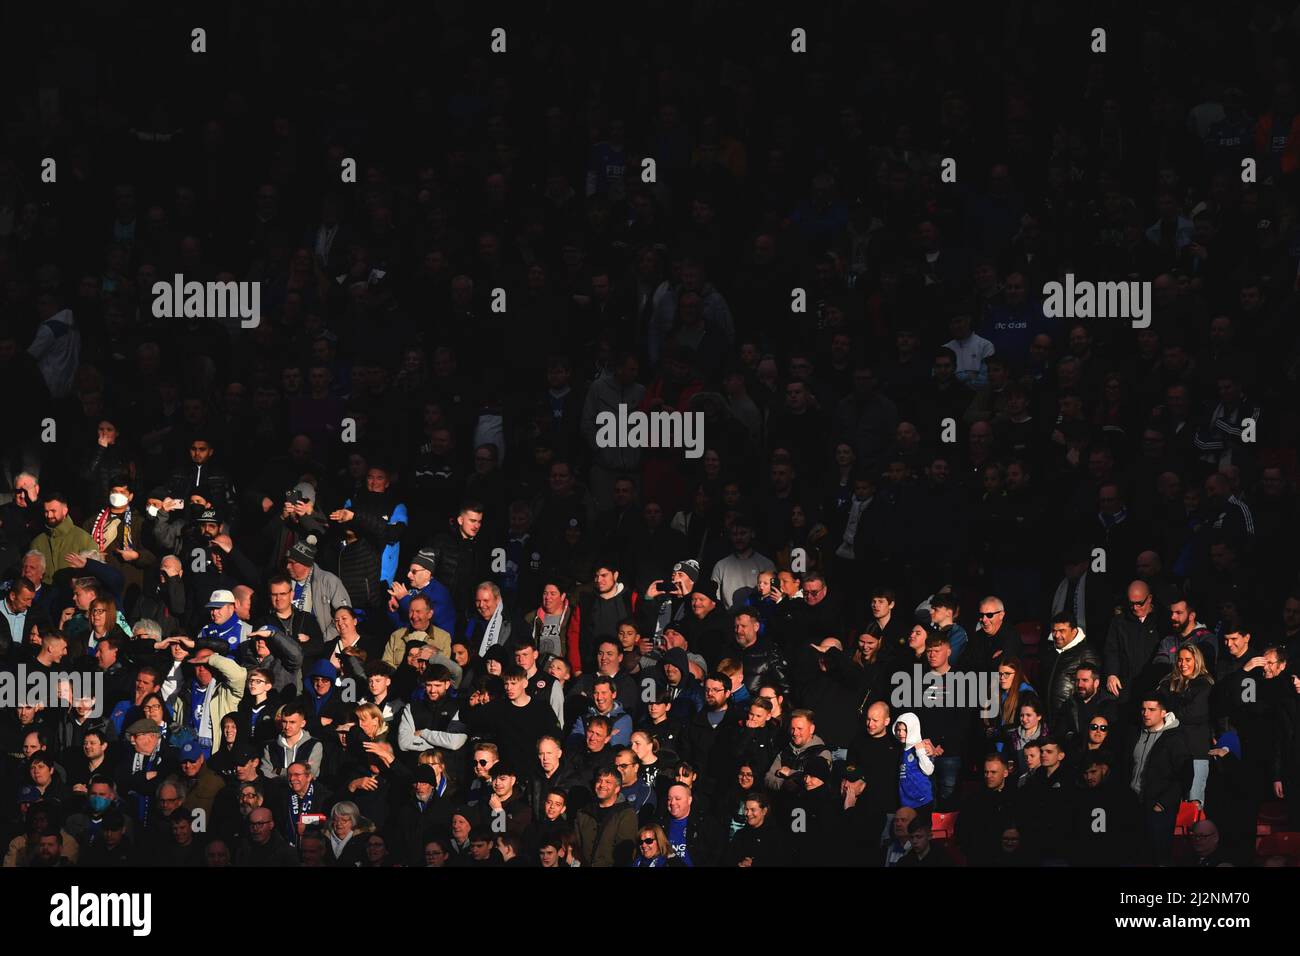 Leicester City-Fans bei strahlendem Sonnenschein während des Premier League-Spiels in Old Trafford, Greater Manchester, Großbritannien. Bilddatum: Samstag, 2. April 2022. Bildnachweis sollte lauten: Anthony Devlin Stockfoto